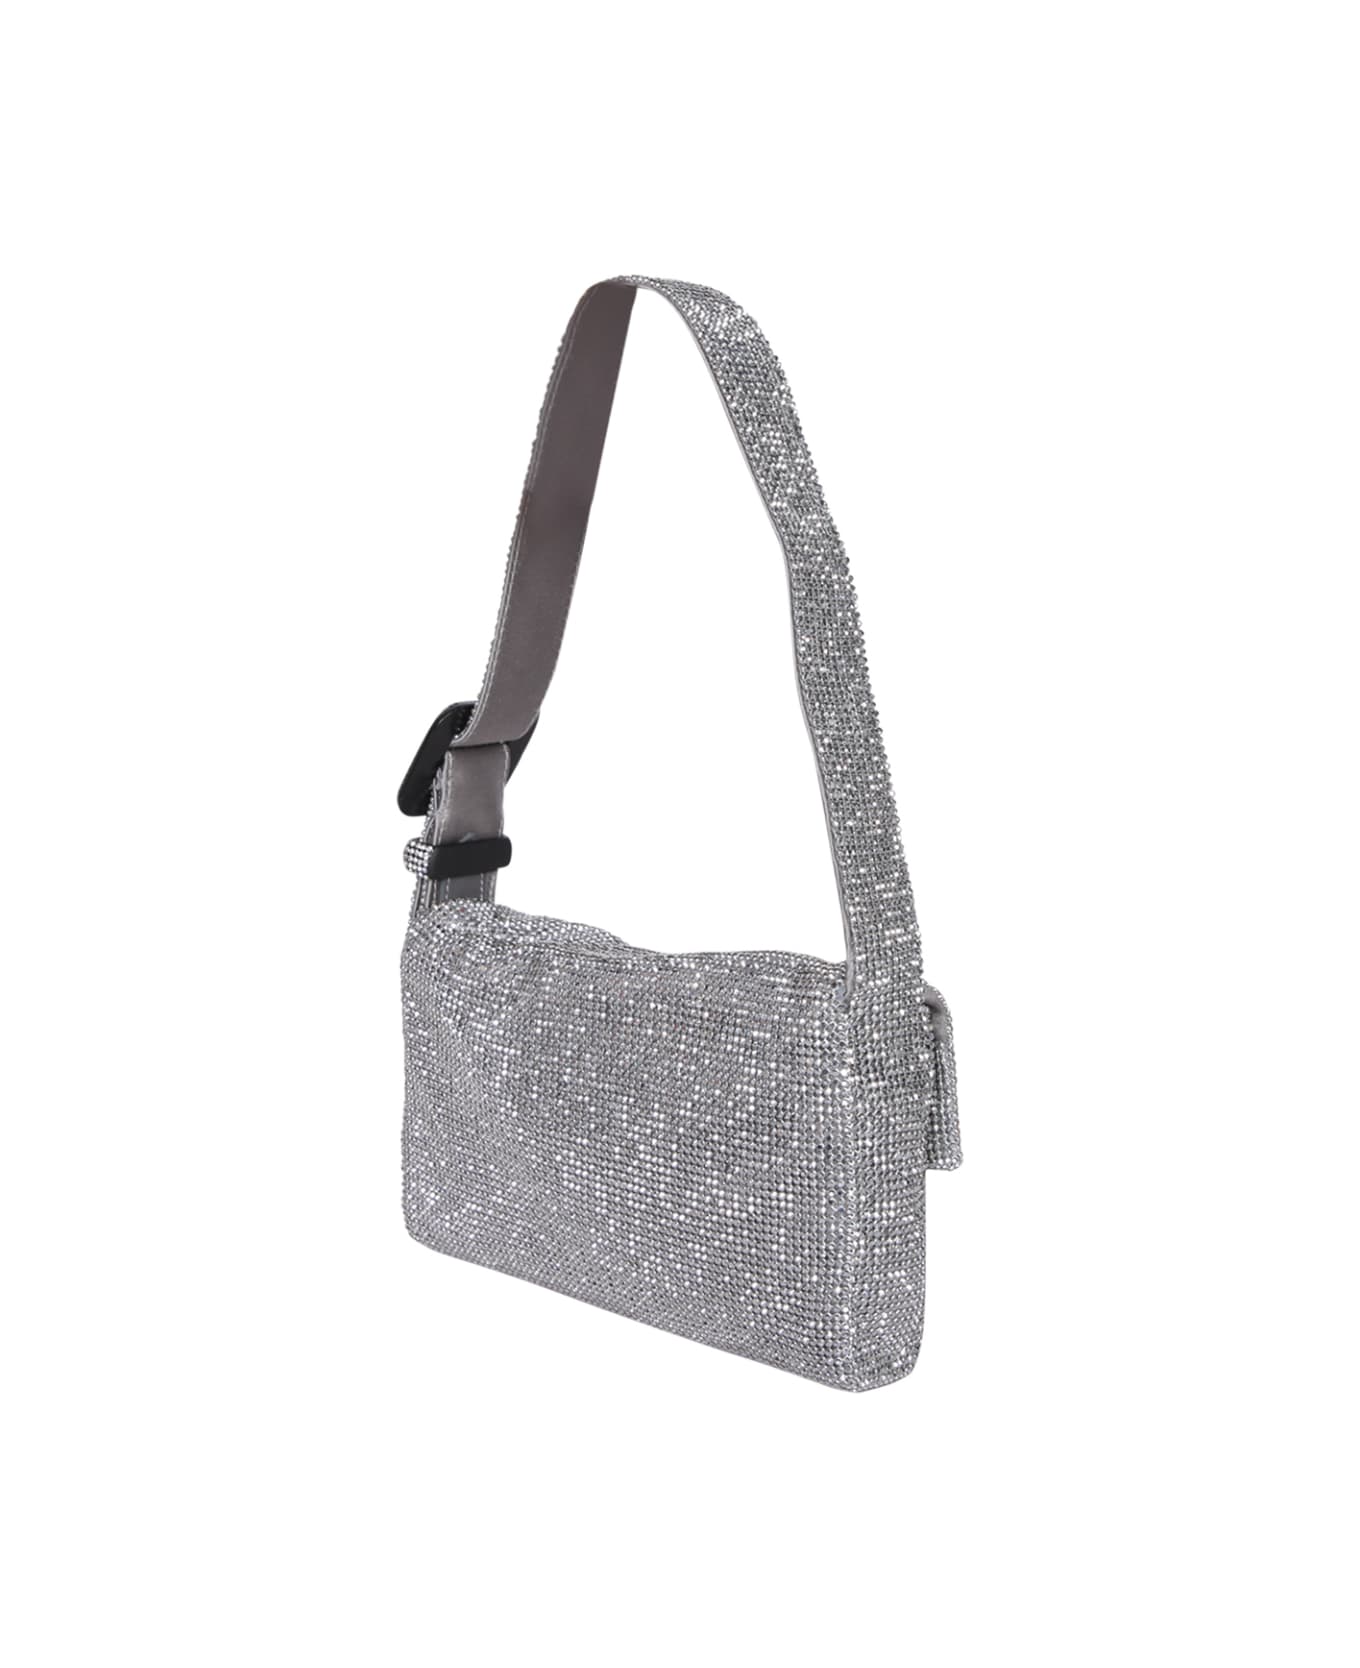 Benedetta Bruzziches Vitty La Mignon Silver Bag - Metallic